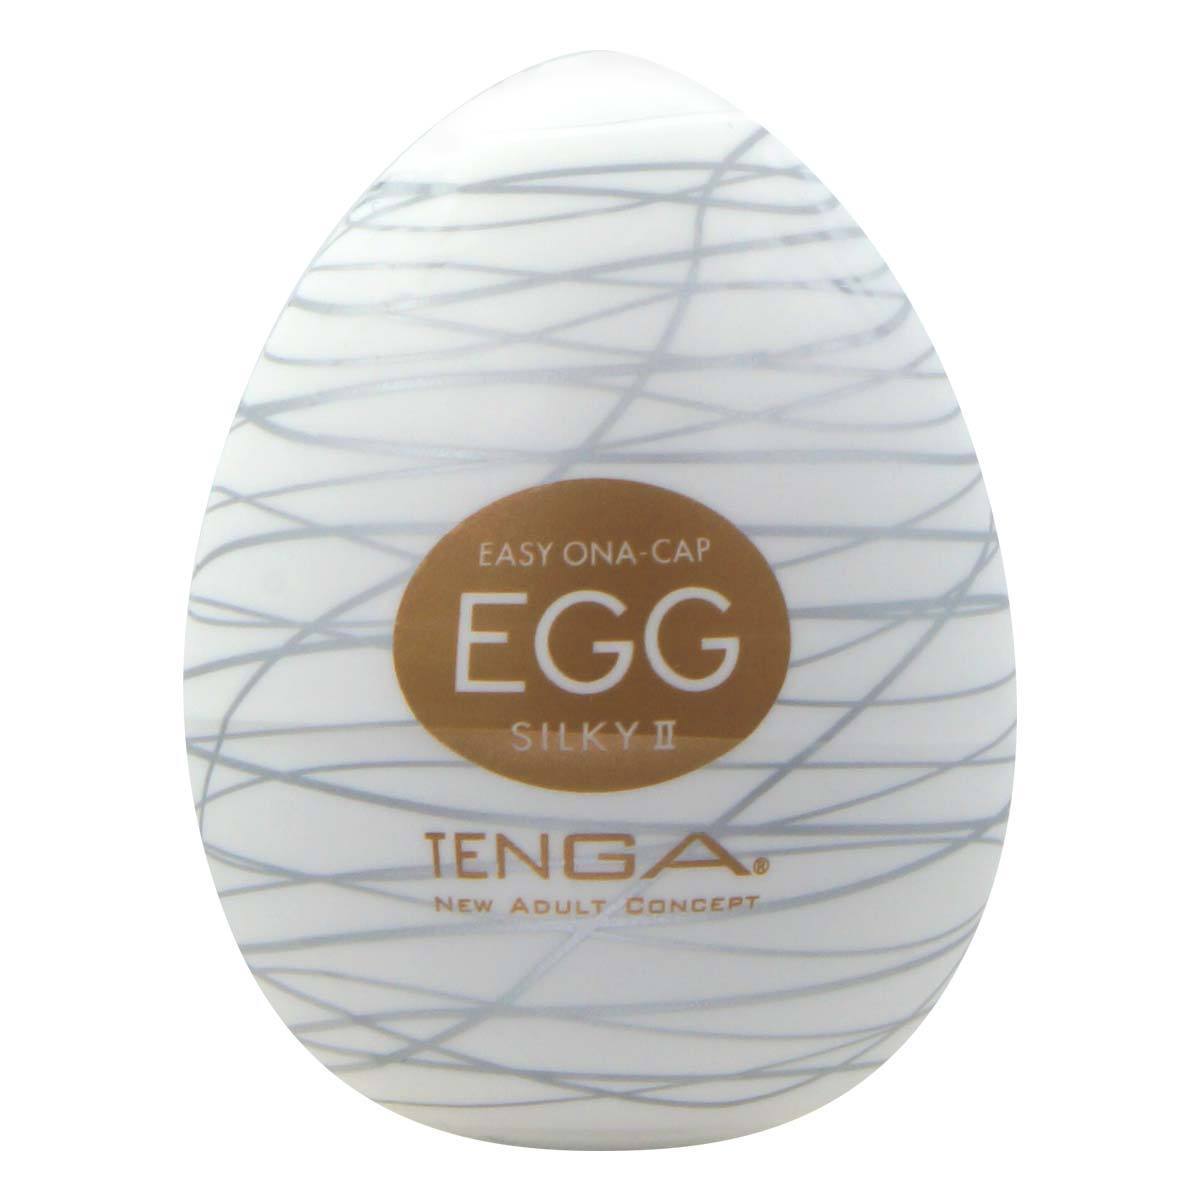 TENGA Egg Silky II 滑行 2 代飛機蛋 飛機蛋 購買